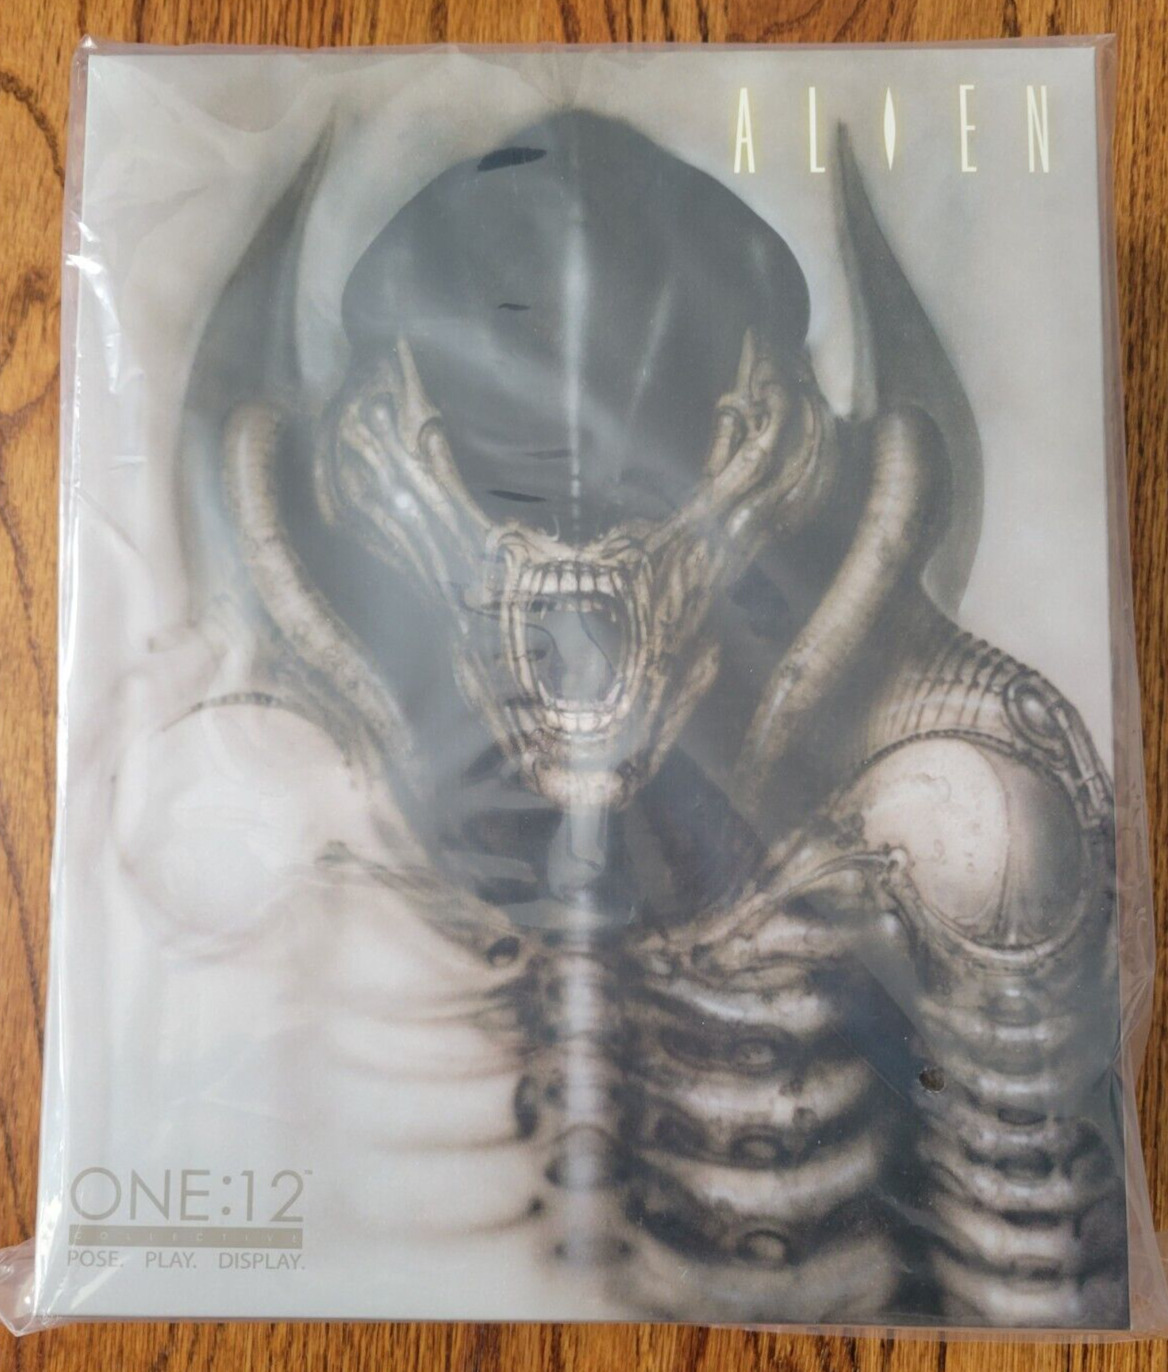 Mezco Exclusive One:12 Collective Alien Xenomorph Concept Edition